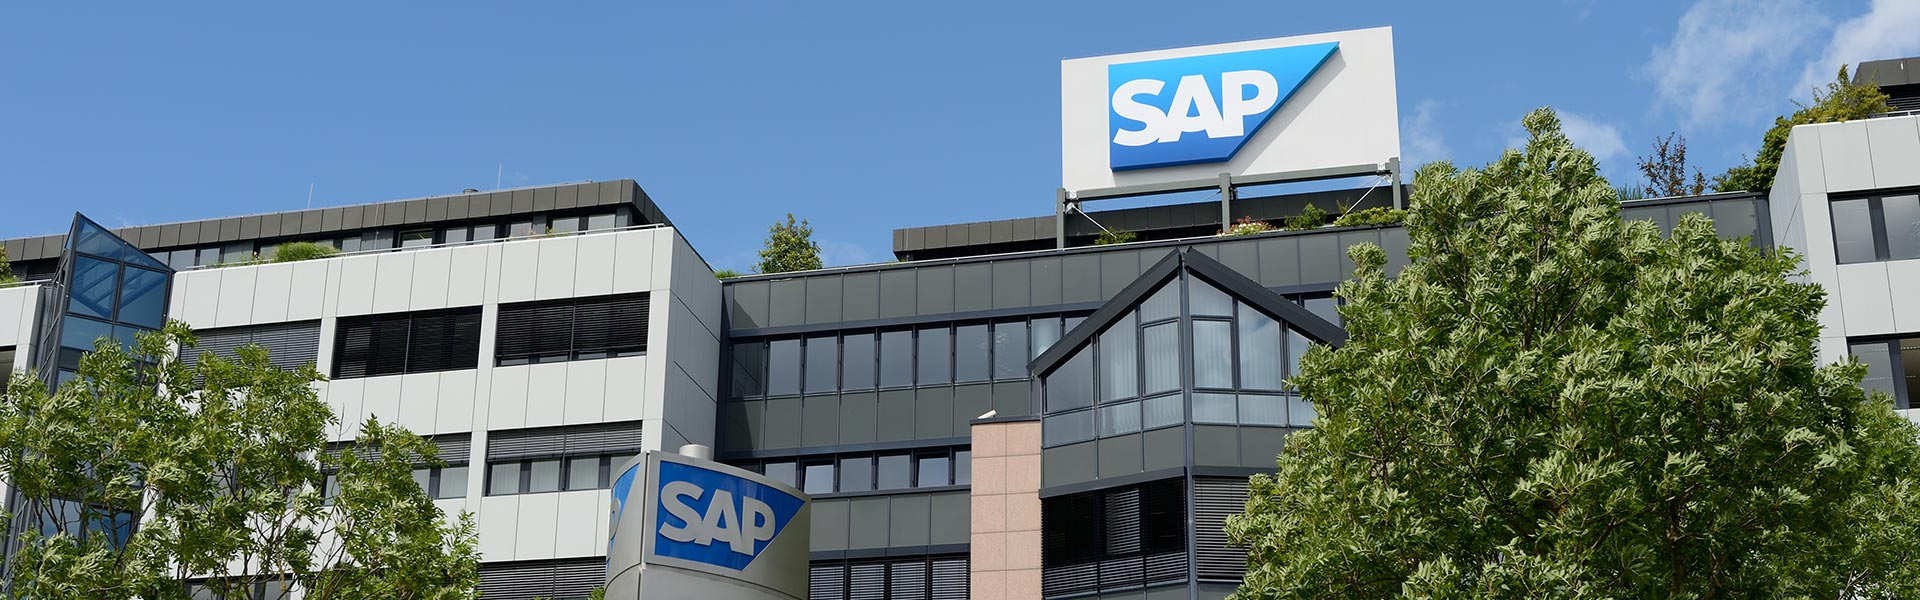 SAP sigue impulsando la transformación de la compañía